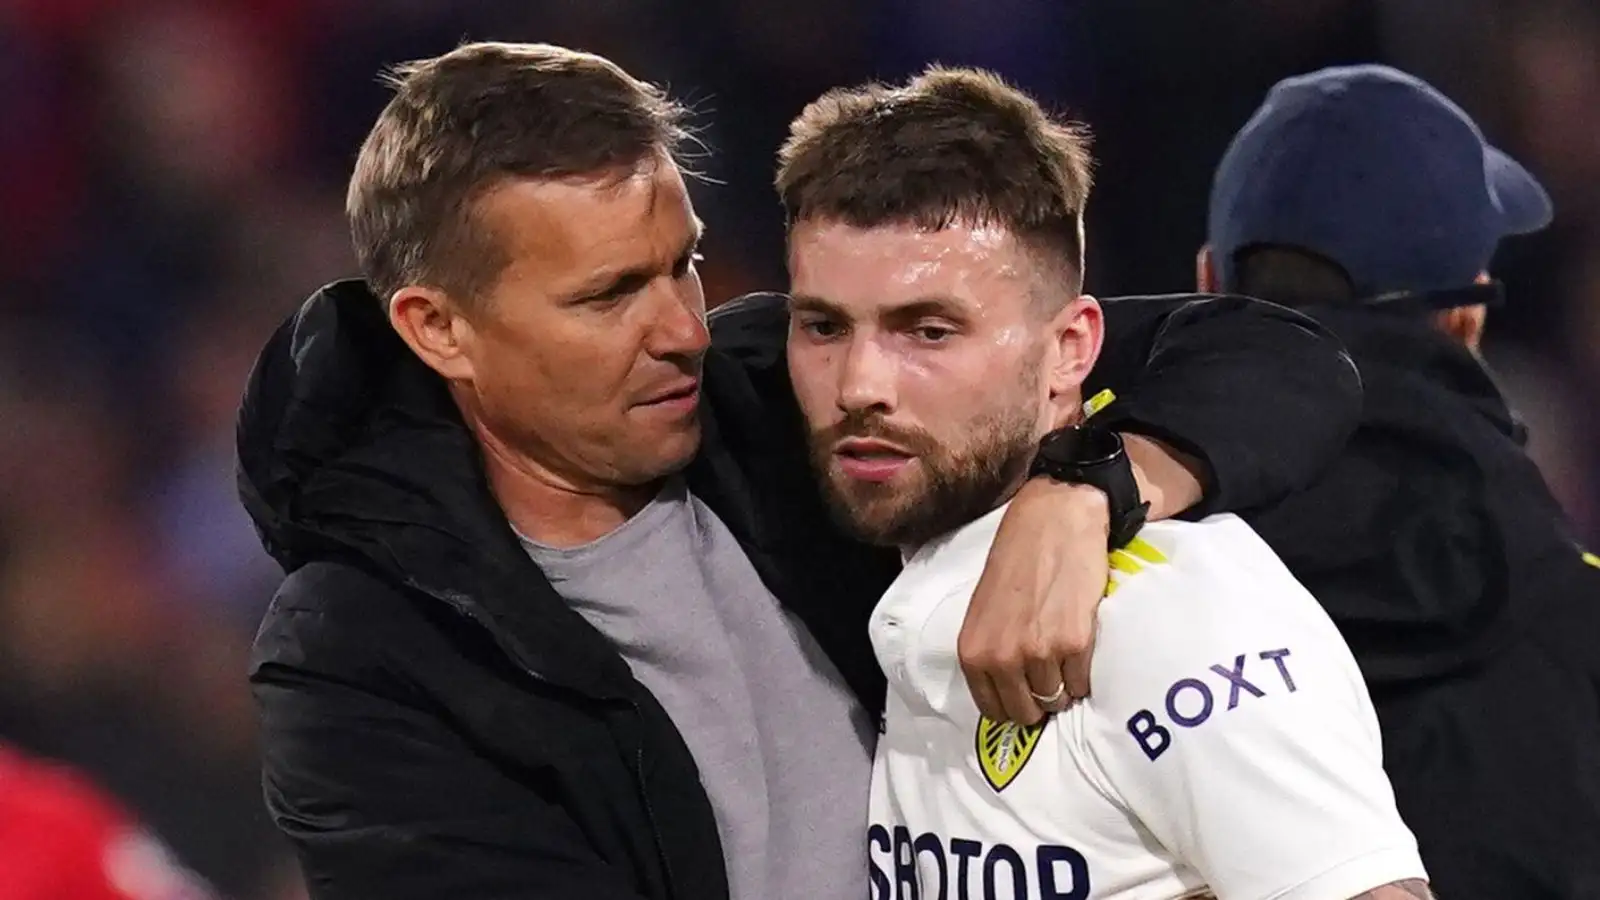 Leeds boss Jesse Marsch gives Stuart Dallas a hug